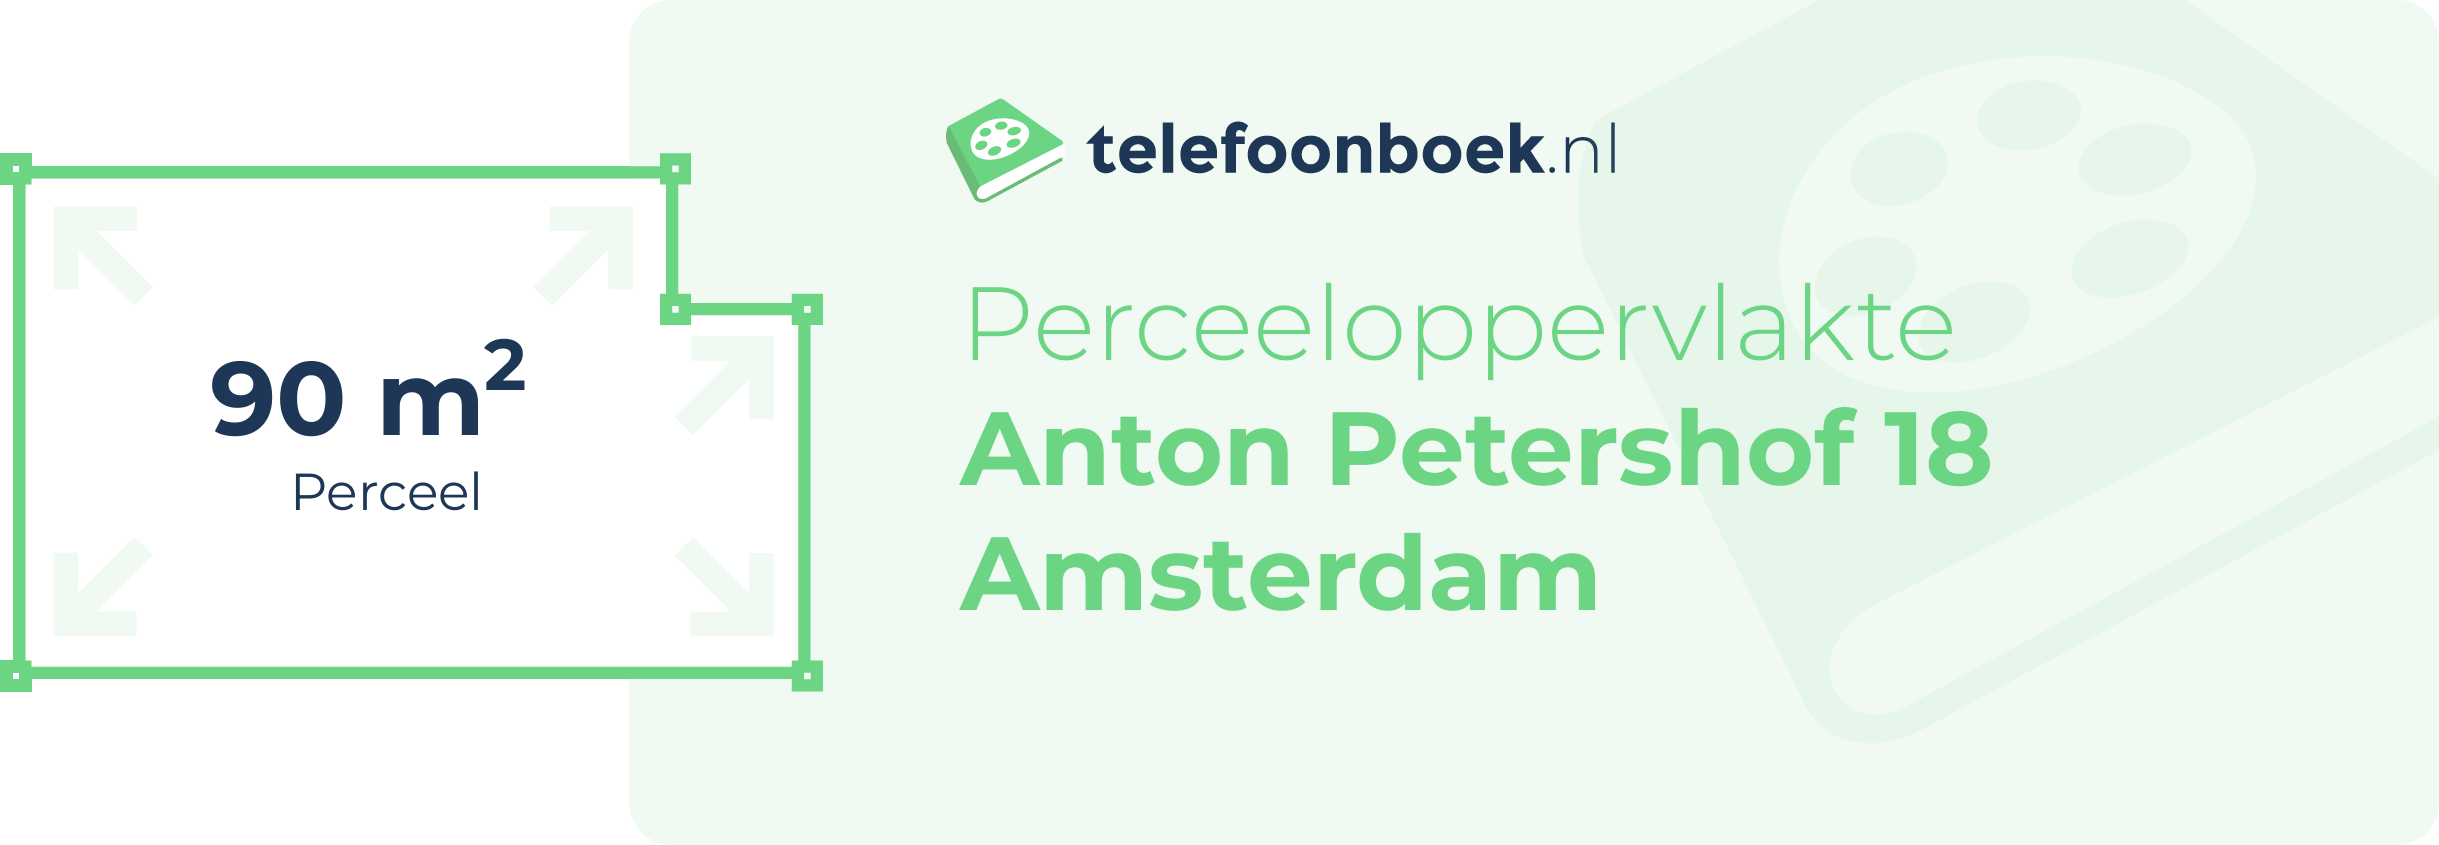 Perceeloppervlakte Anton Petershof 18 Amsterdam